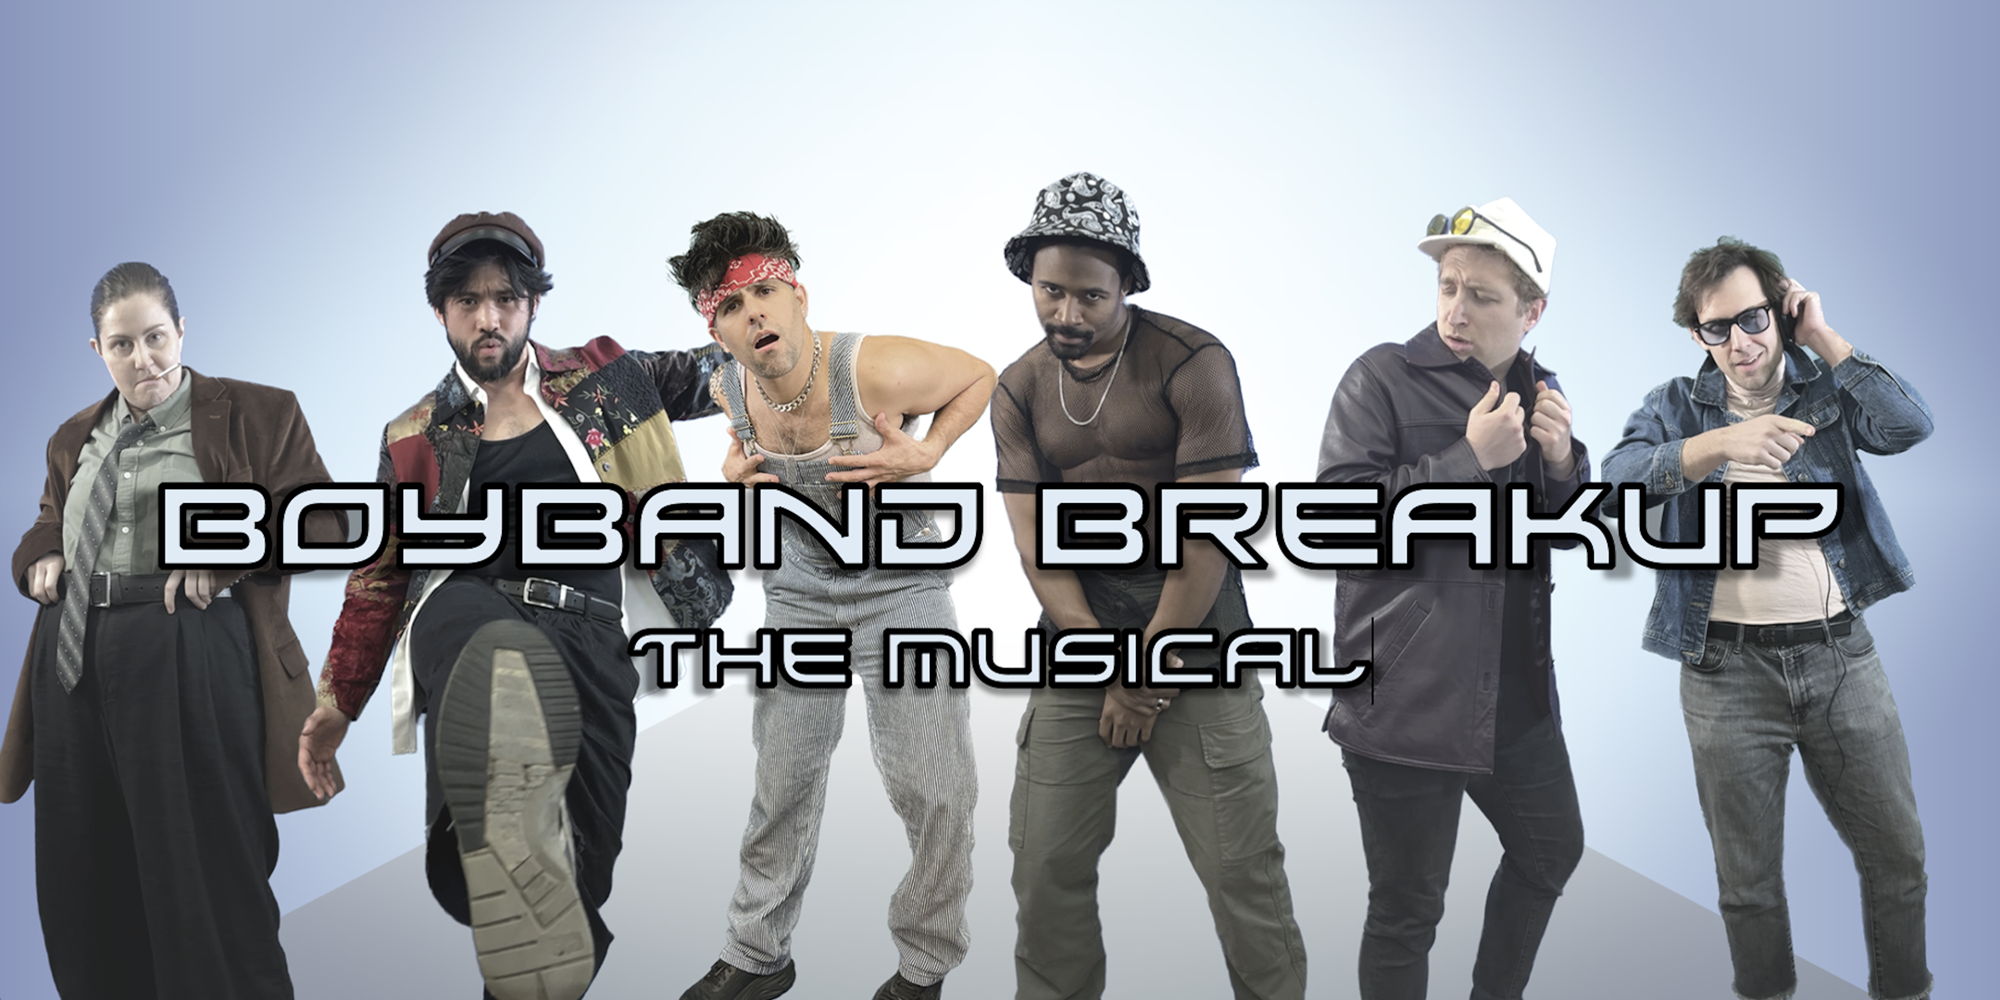 BOYBAND BREAKUP: THE MUSICAL promotional image